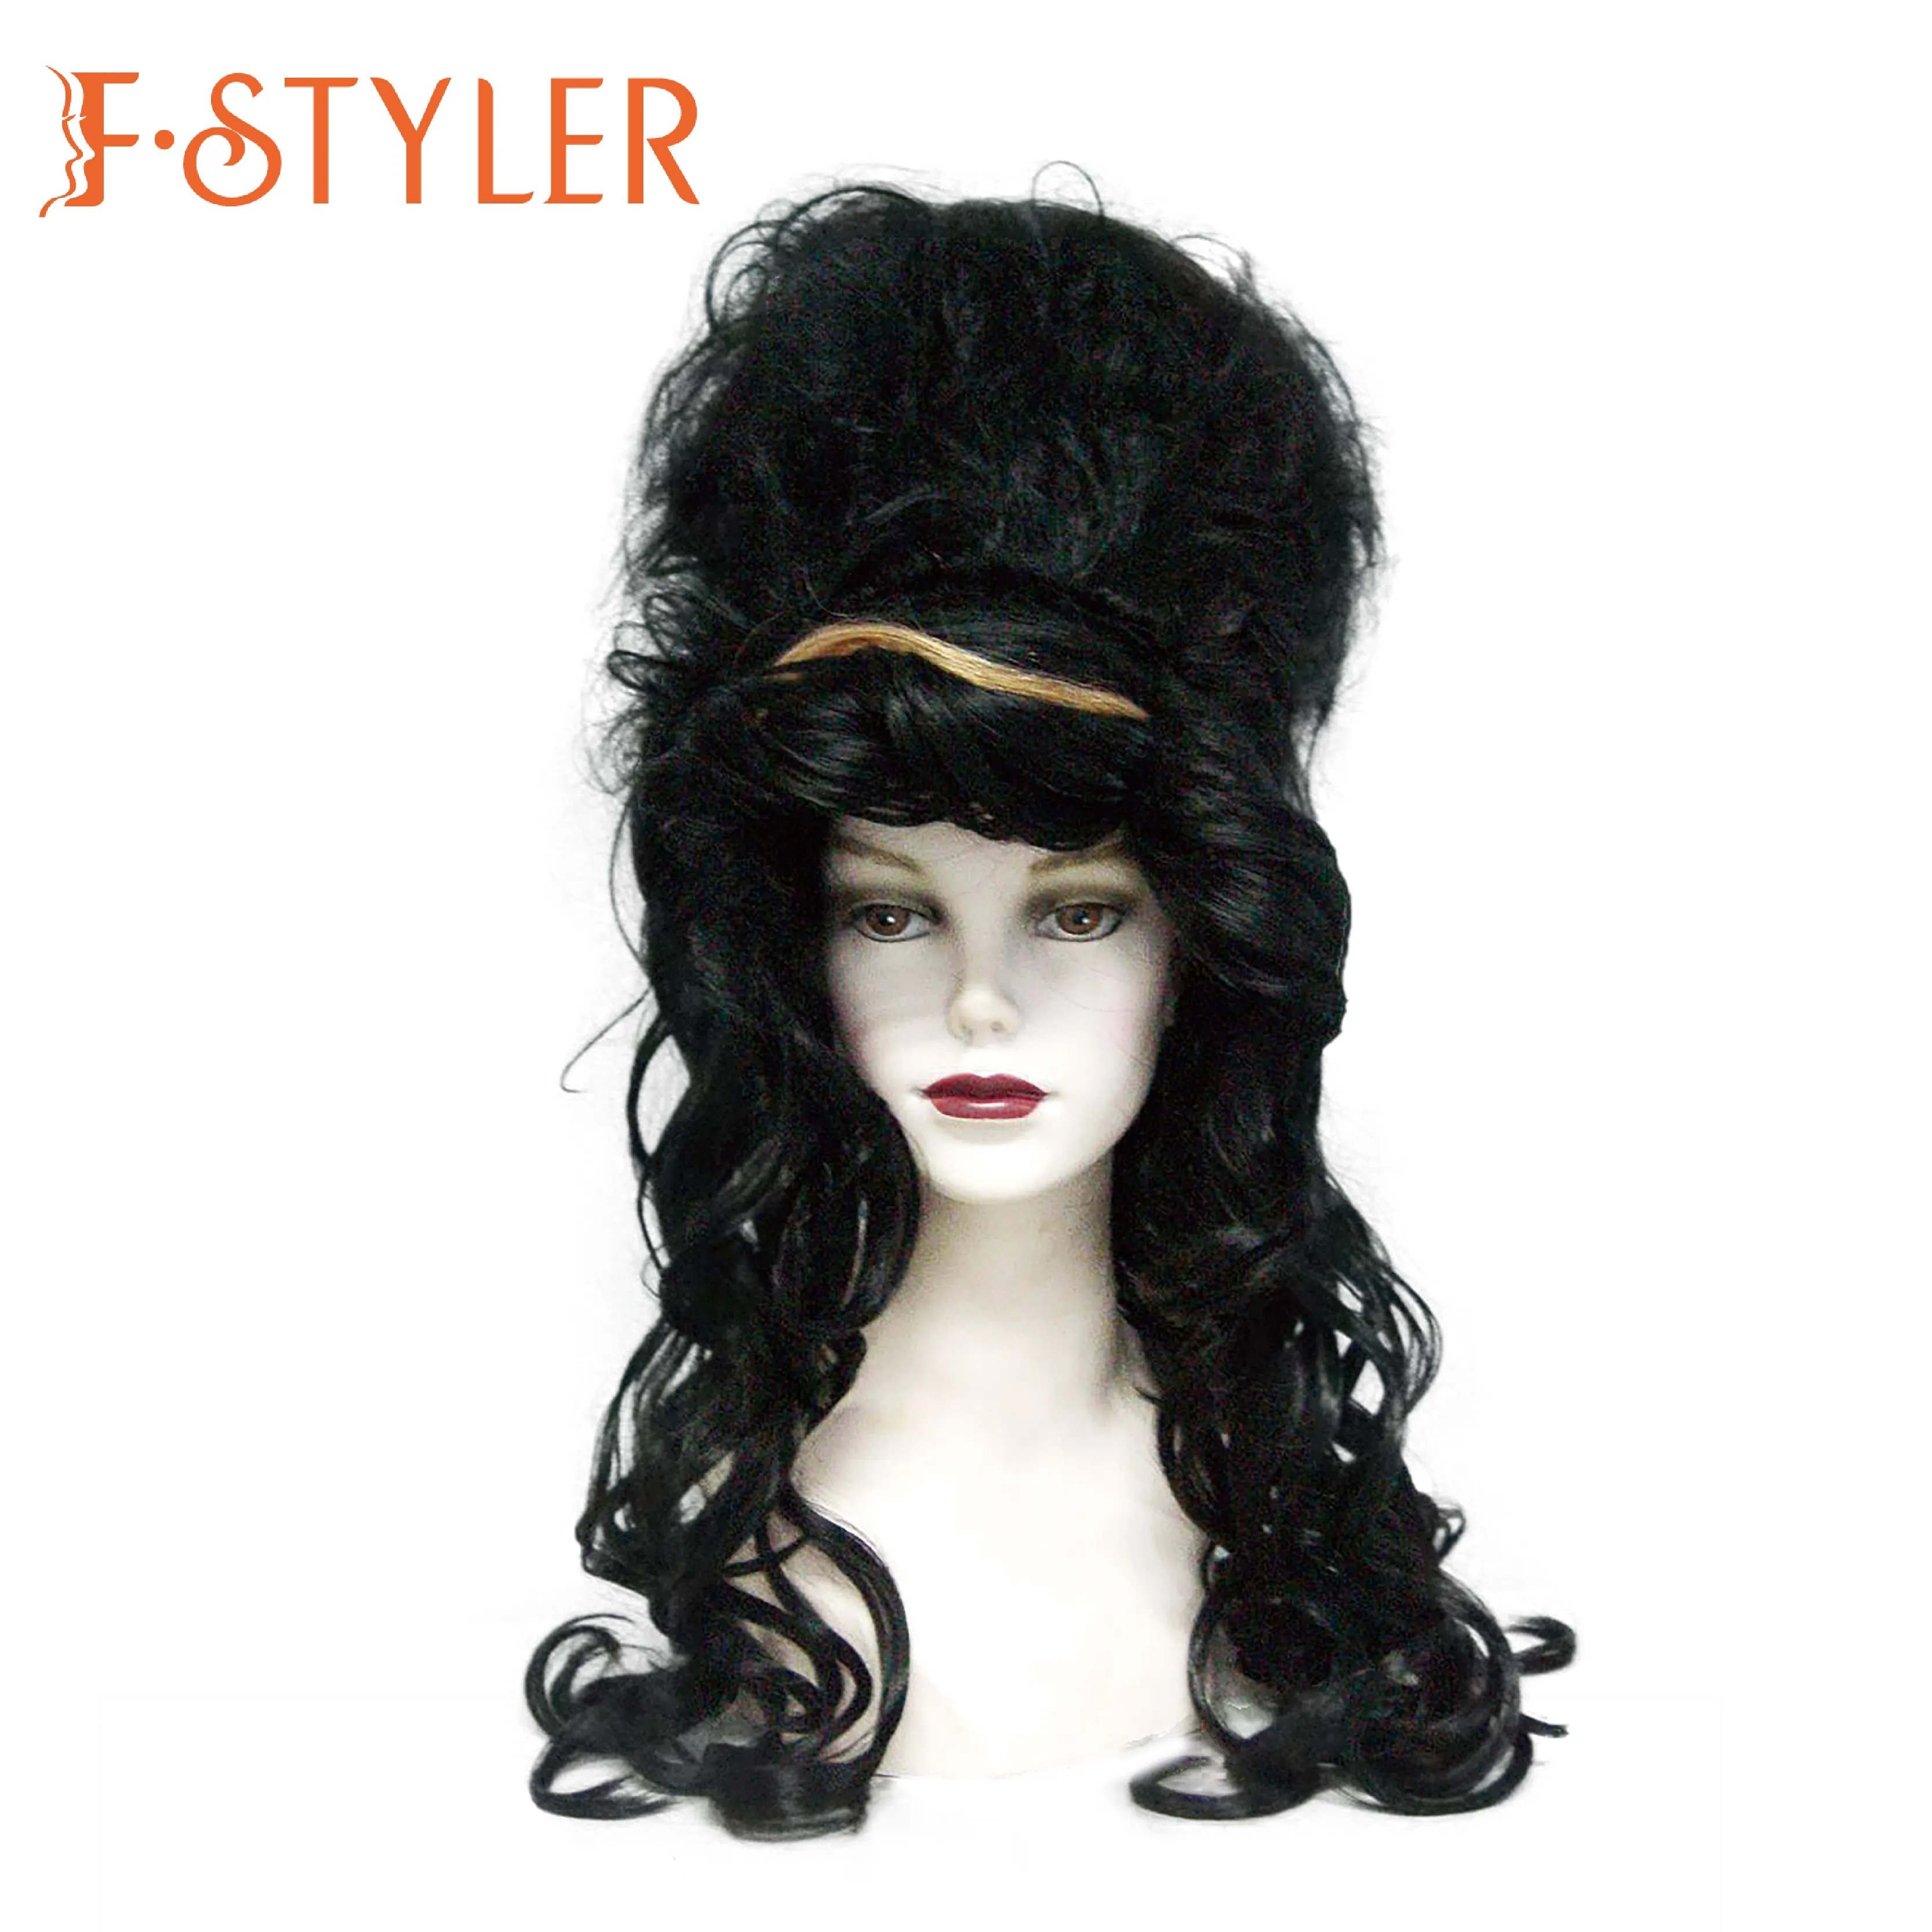 Fstiler peruca estilo Amy Winehouse para mulheres, cabelo sintético para carnaval e Halloween, peruca sintética para cosplay, ideal para festas e festas